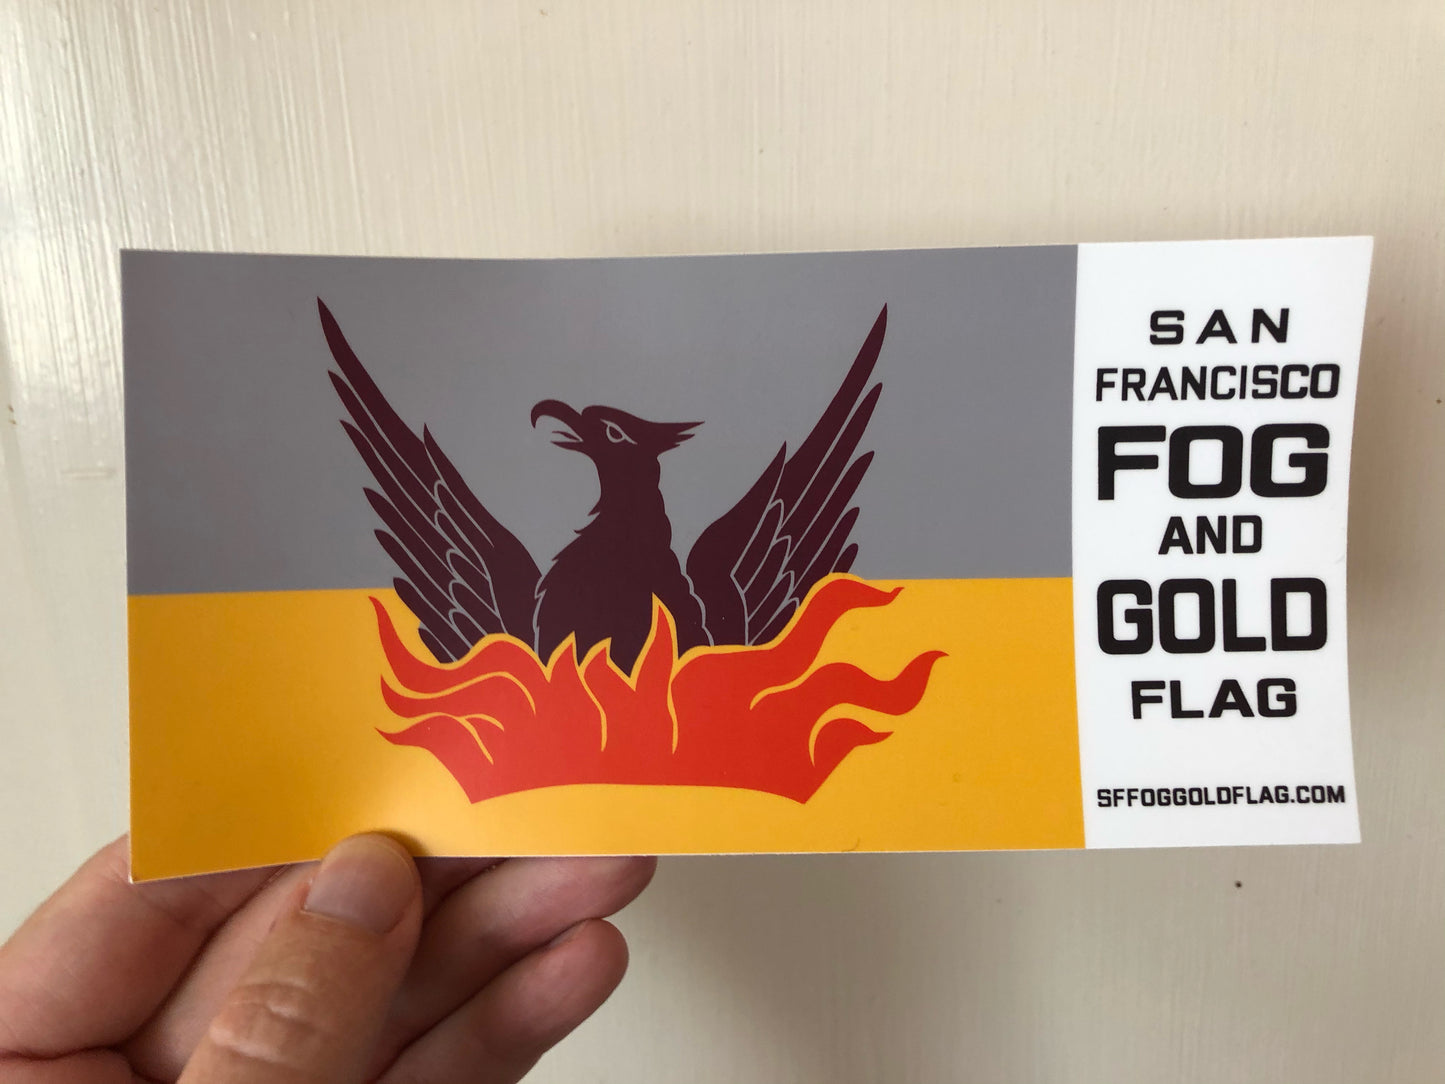 San Francisco Fog & Gold Flag bumper sticker